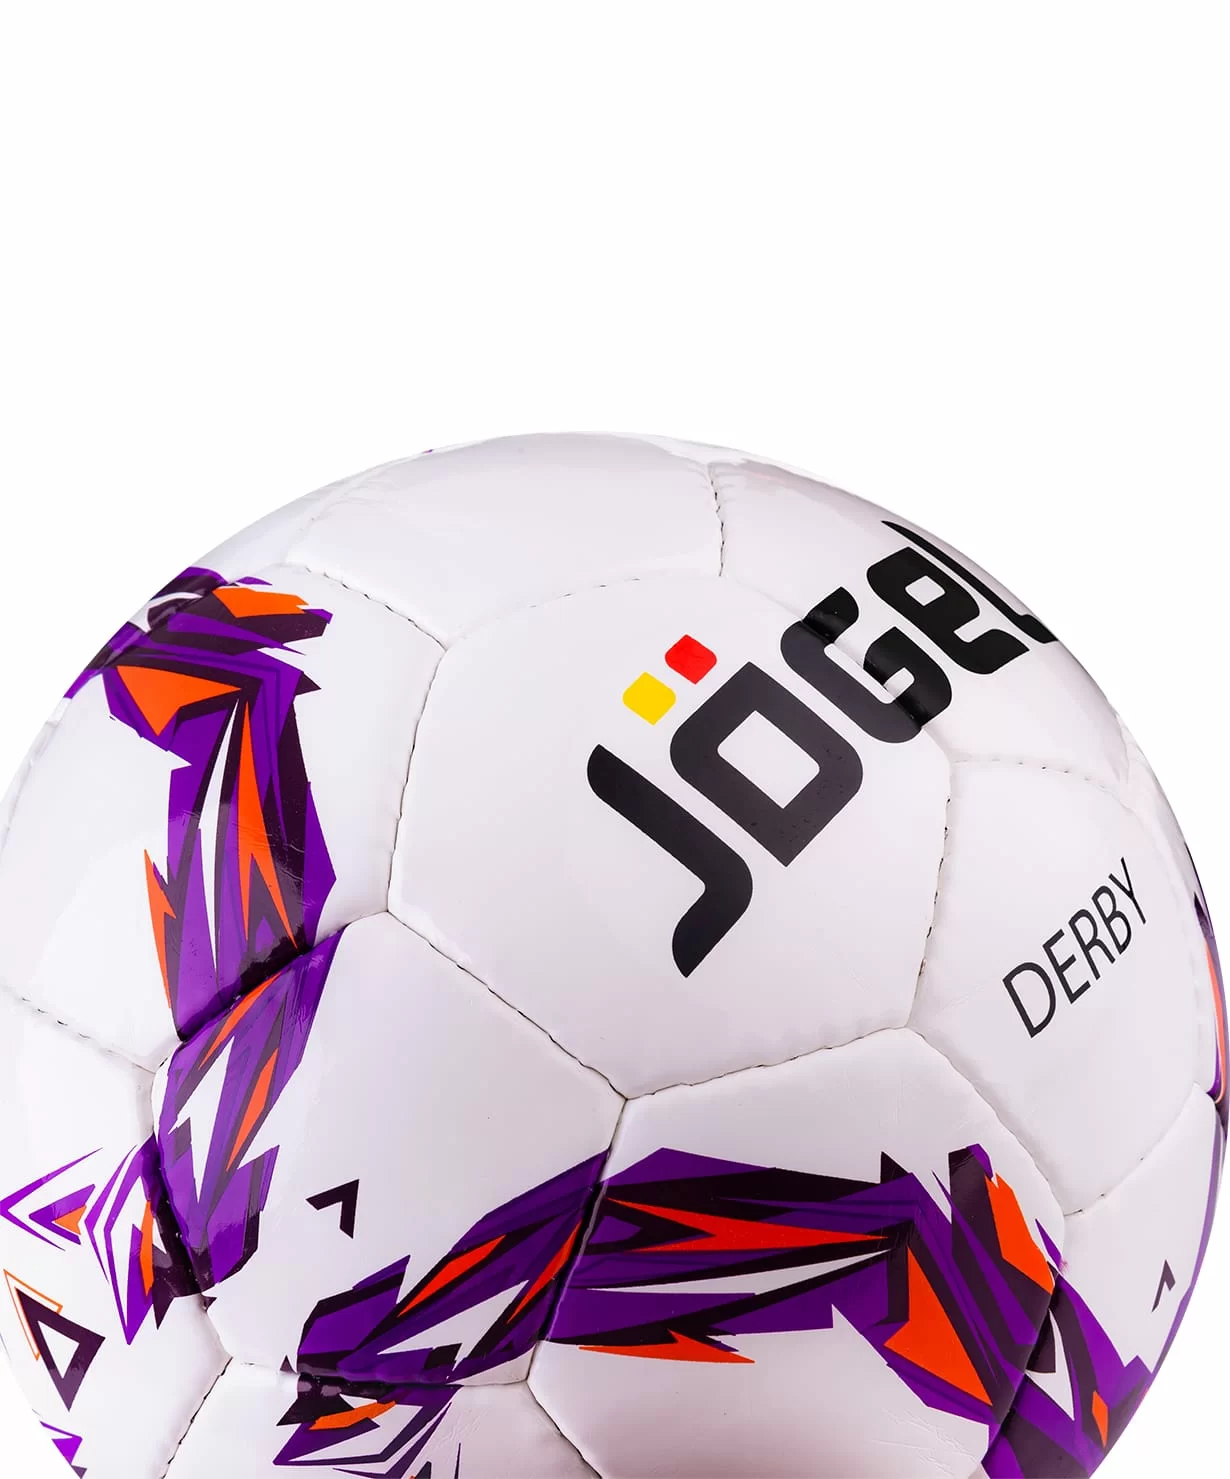 Фото Мяч футбольный Jögel JS-560 Derby №4 13866 со склада магазина СпортСЕ